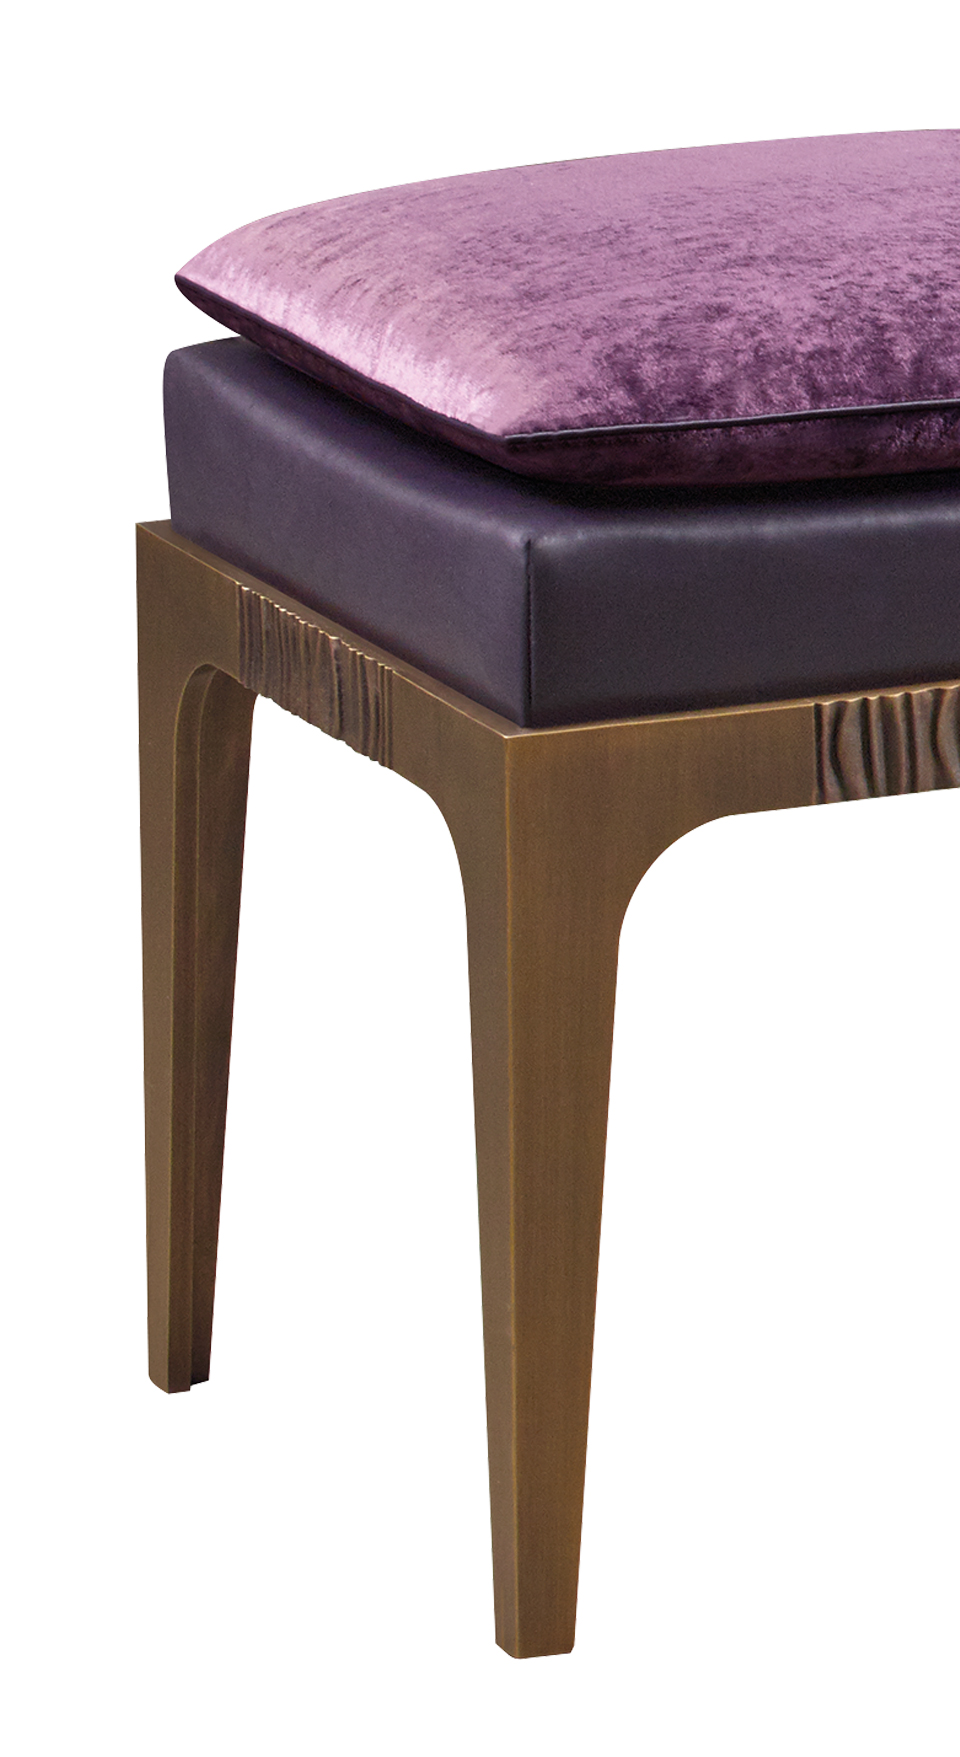 Détail de Montagu, tabouret en bronze, avec assise en cuir et coussin en tissu. Ce meuble fait partie de la collection « The London Collection » de Promemoria | Promemoria